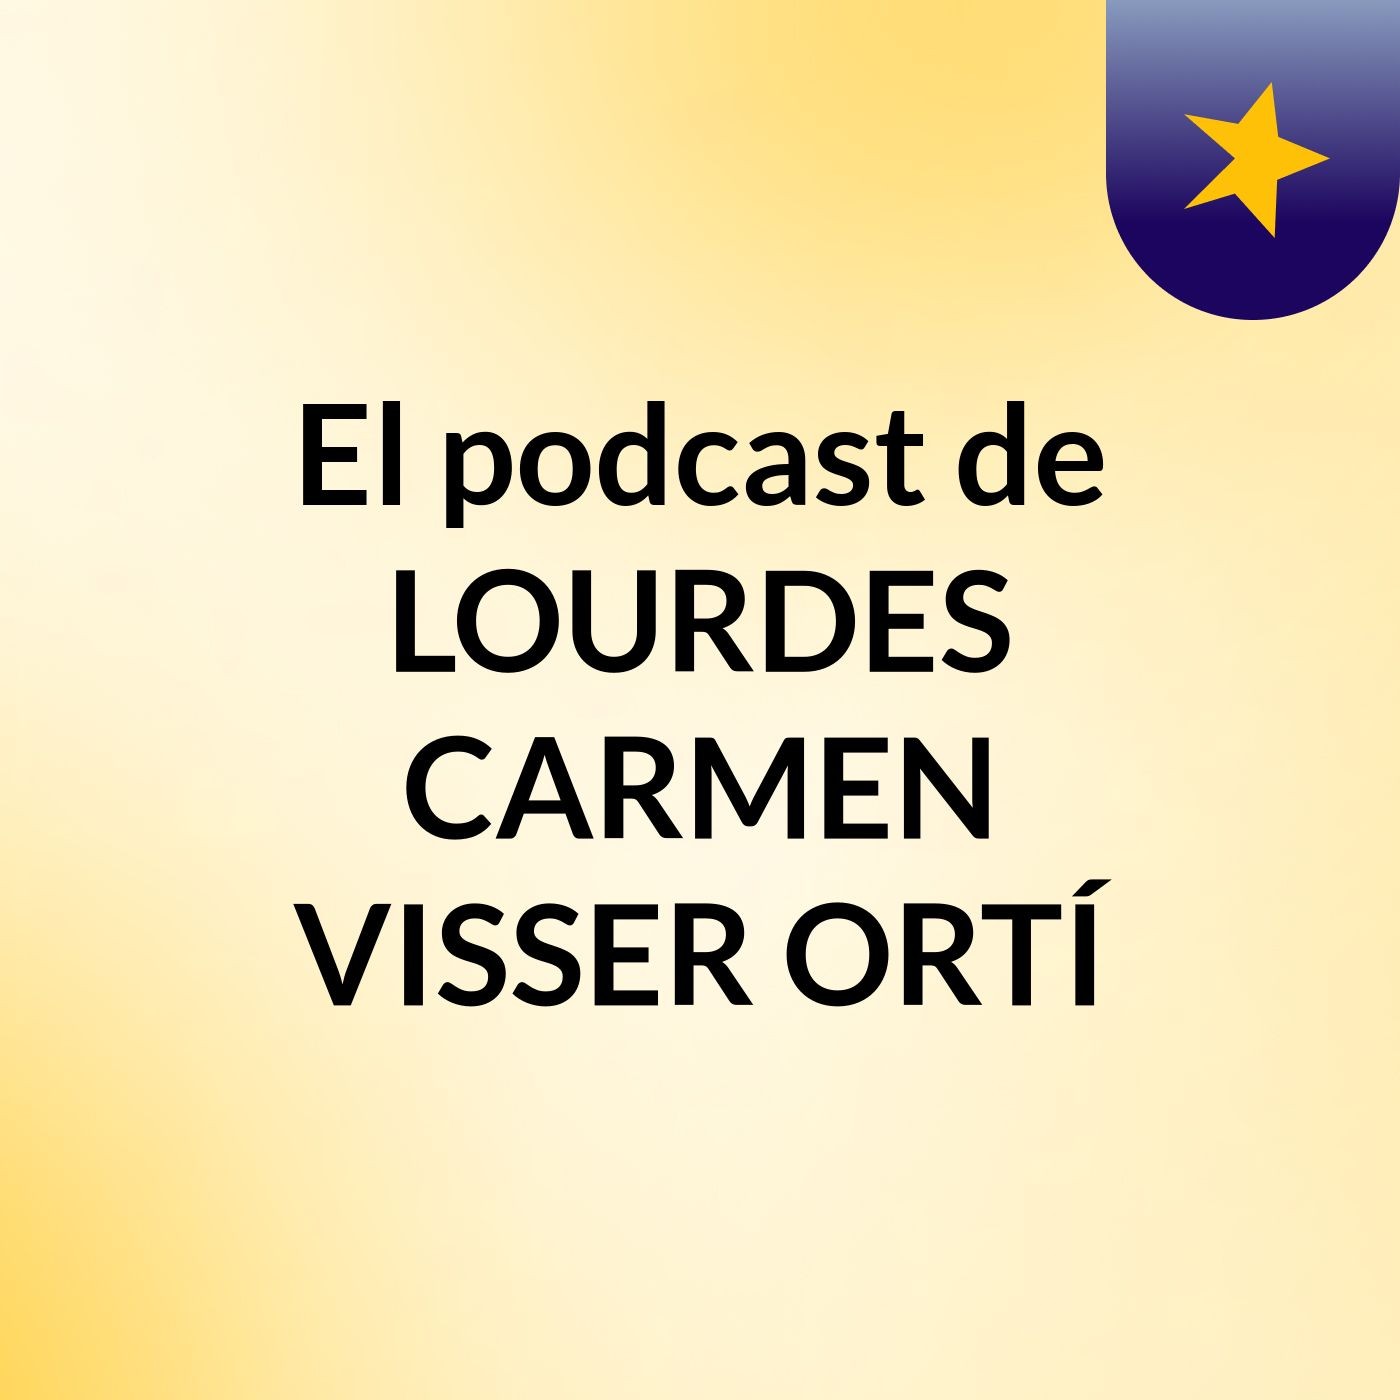 El podcast de LOURDES CARMEN VISSER ORTÍ